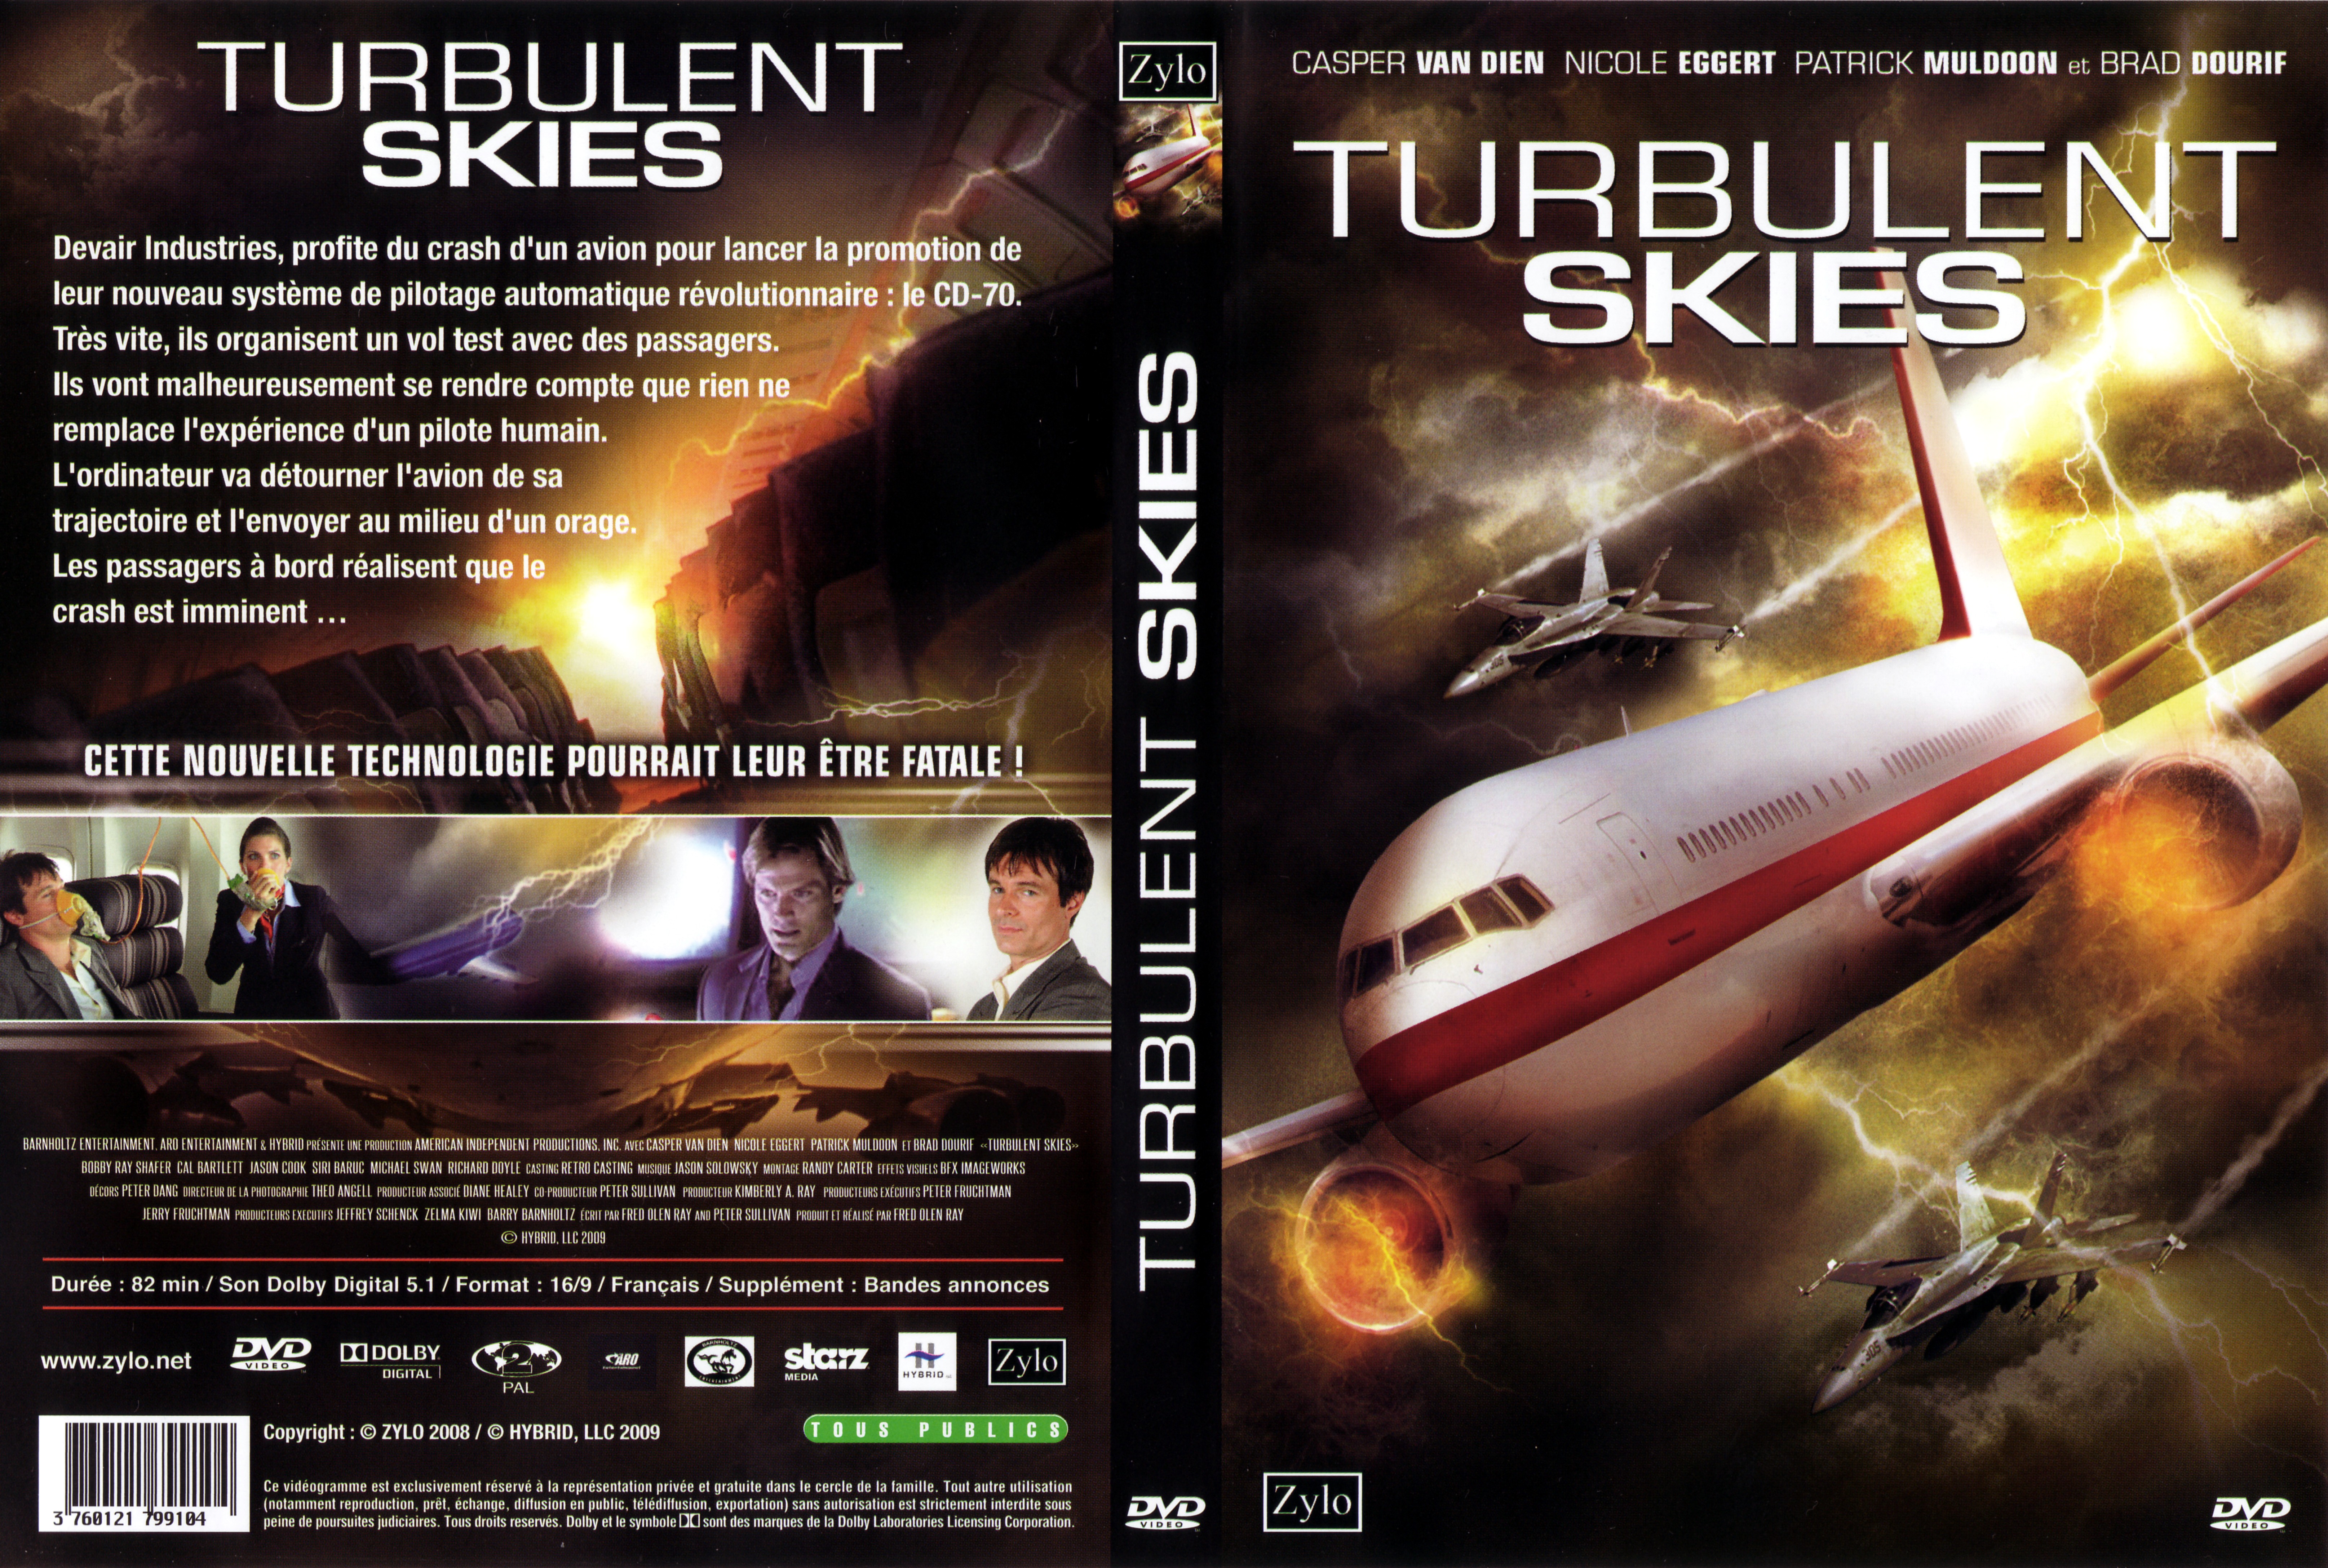 Jaquette DVD Turbulent skies